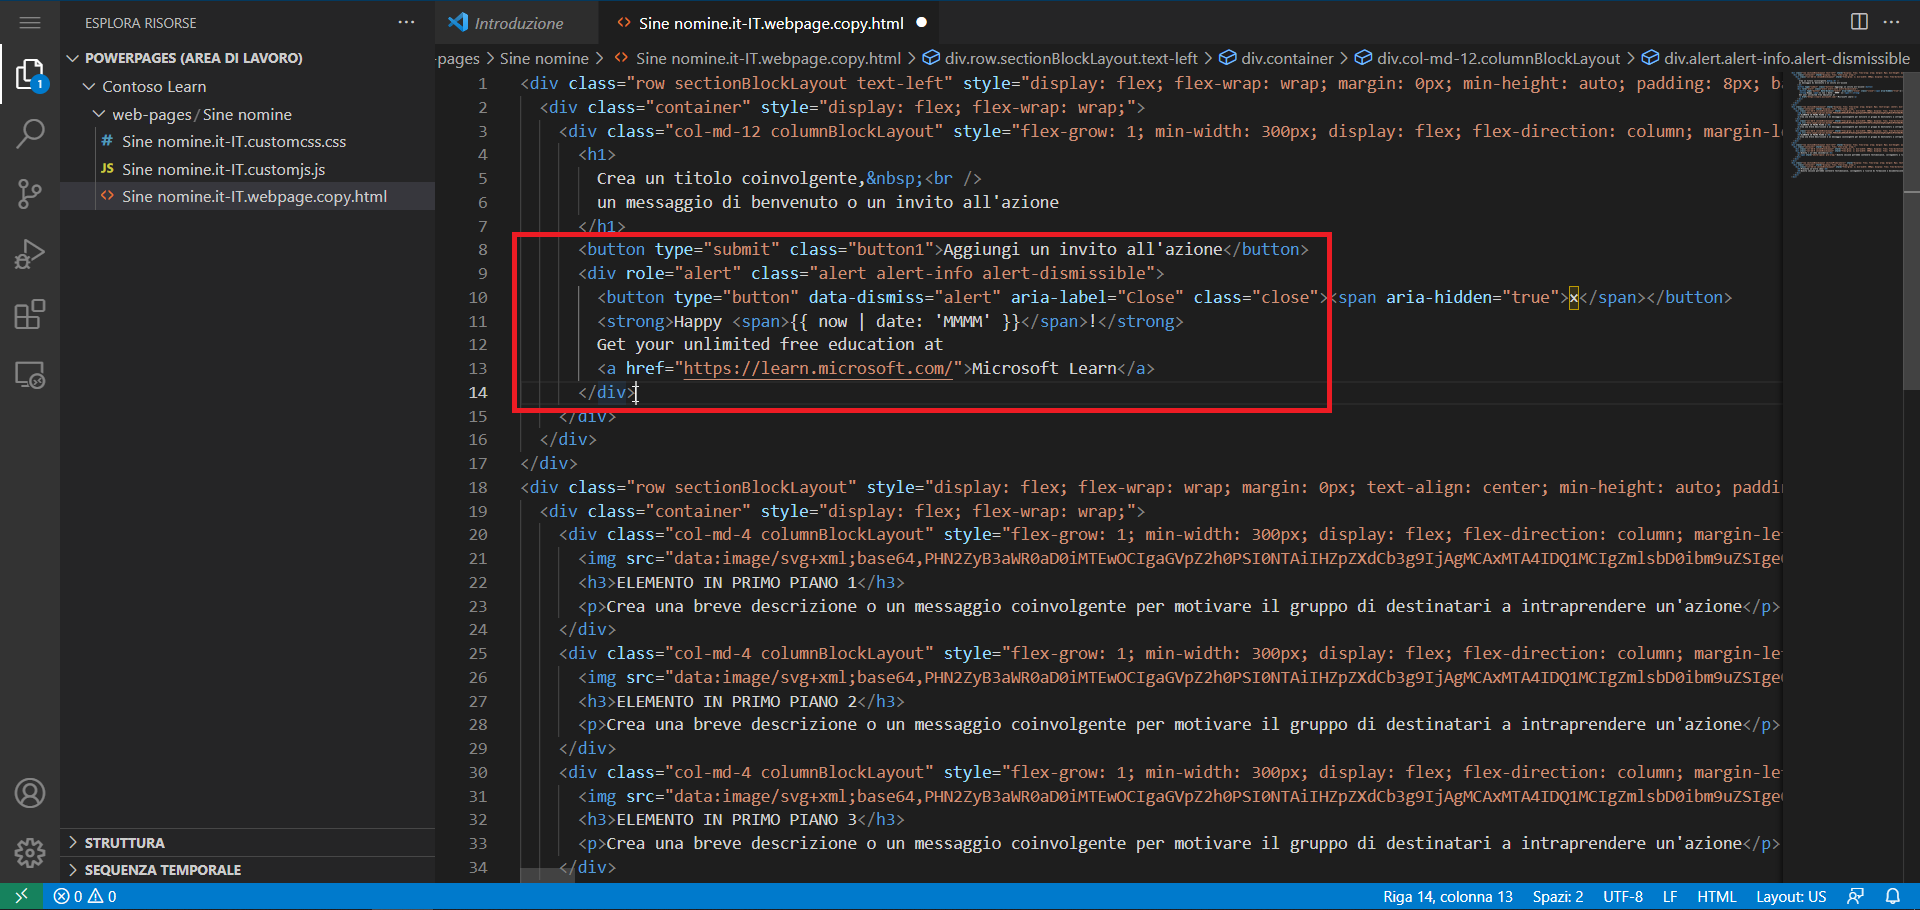 Screenshot del contenuto della pagina aperto nell'editor di Visual Studio Code per il Web con il nuovo contenuto evidenziato.